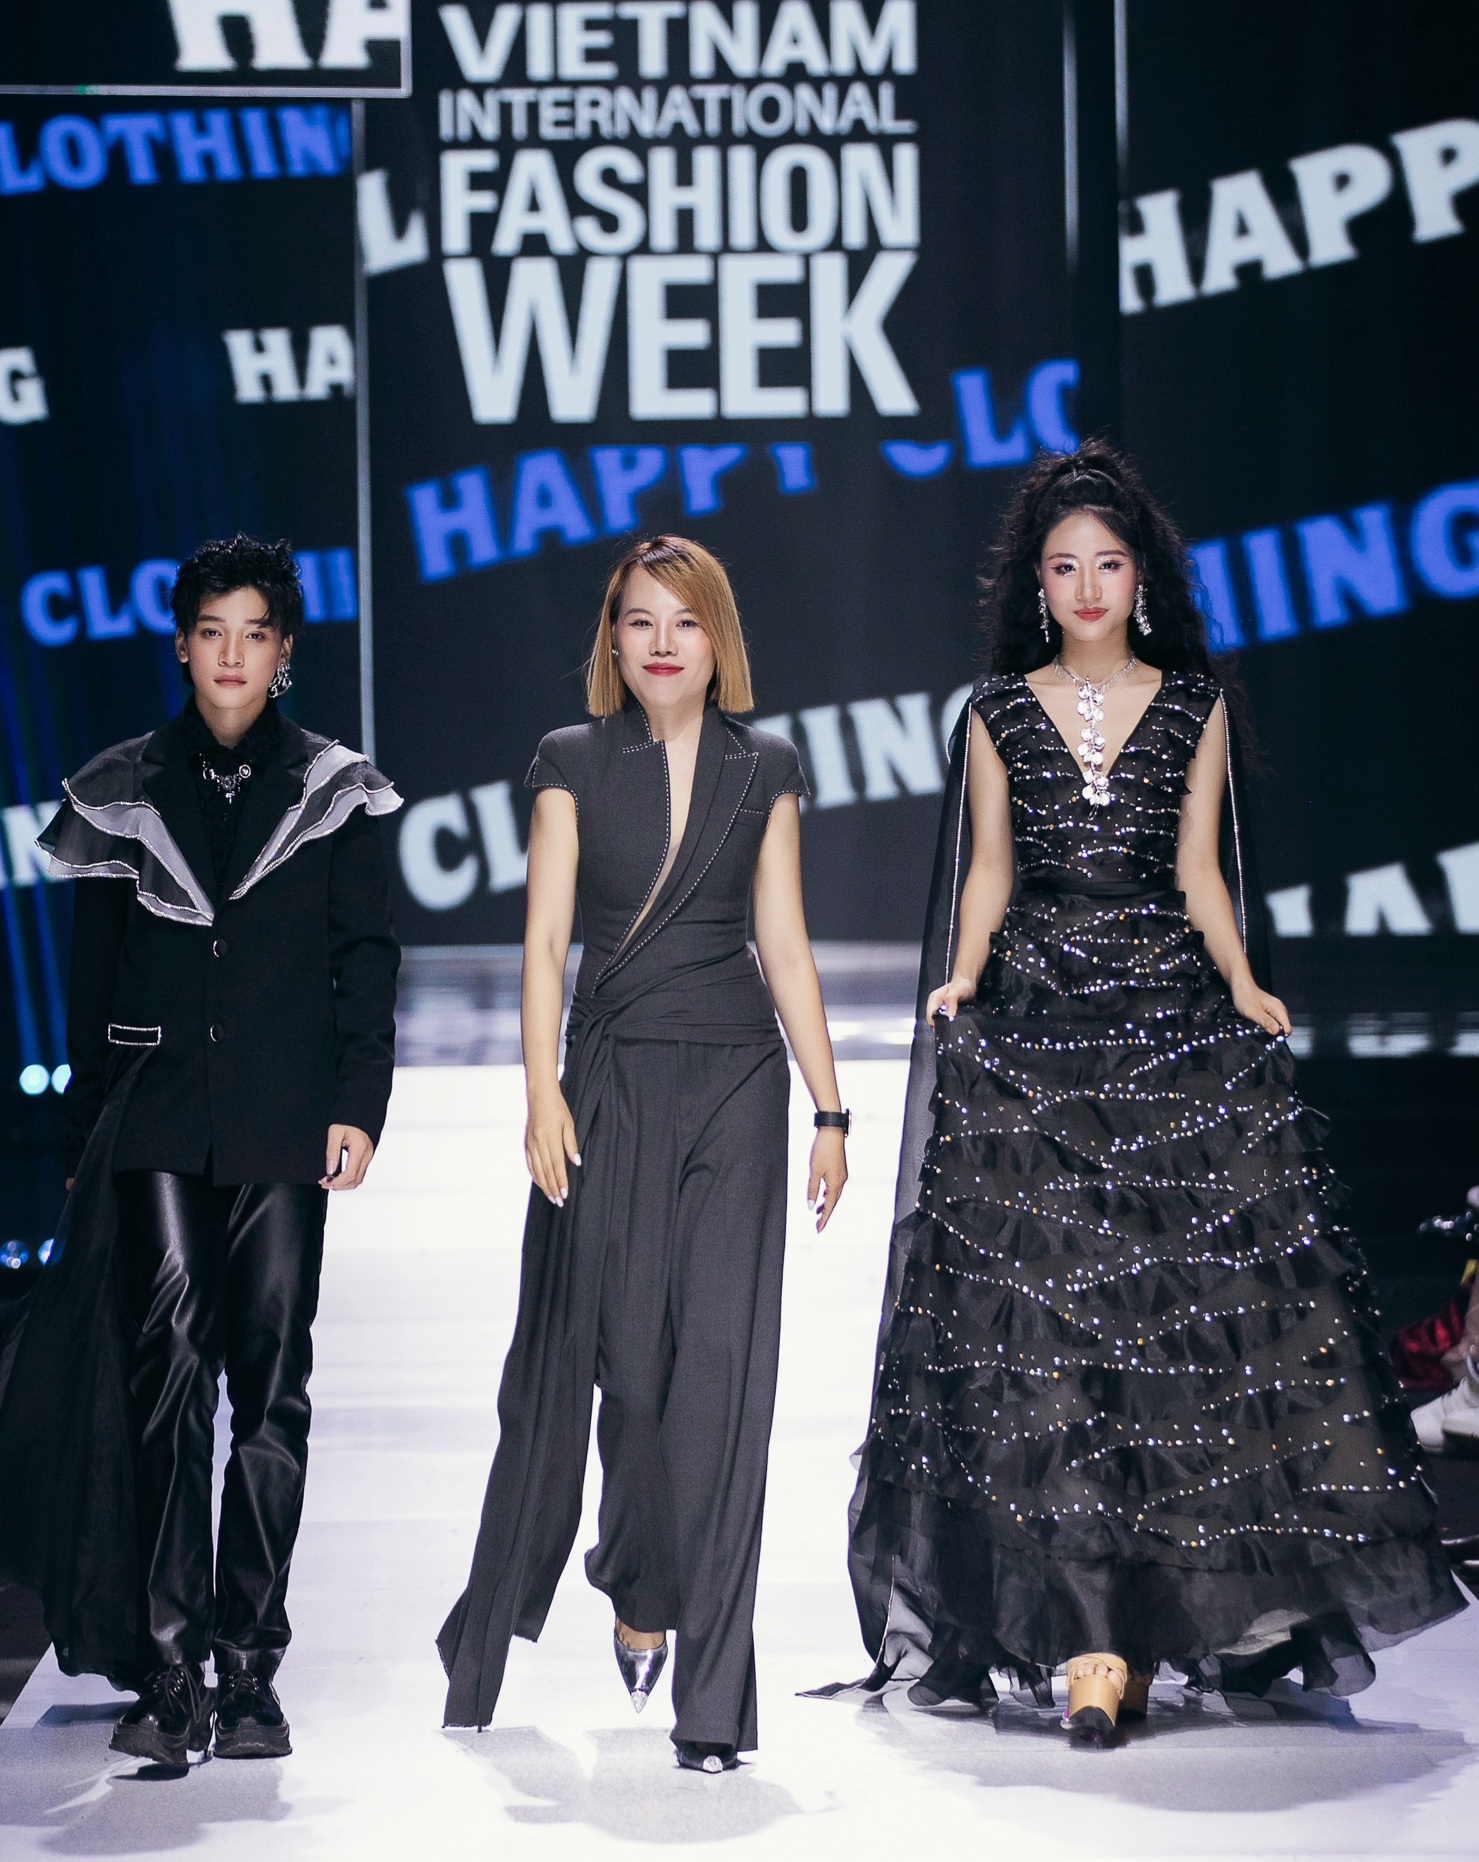 View - H'Hen Niê, Quỳnh Châu catwalk trong trang phục cảm hứng mây trời | Báo Dân trí